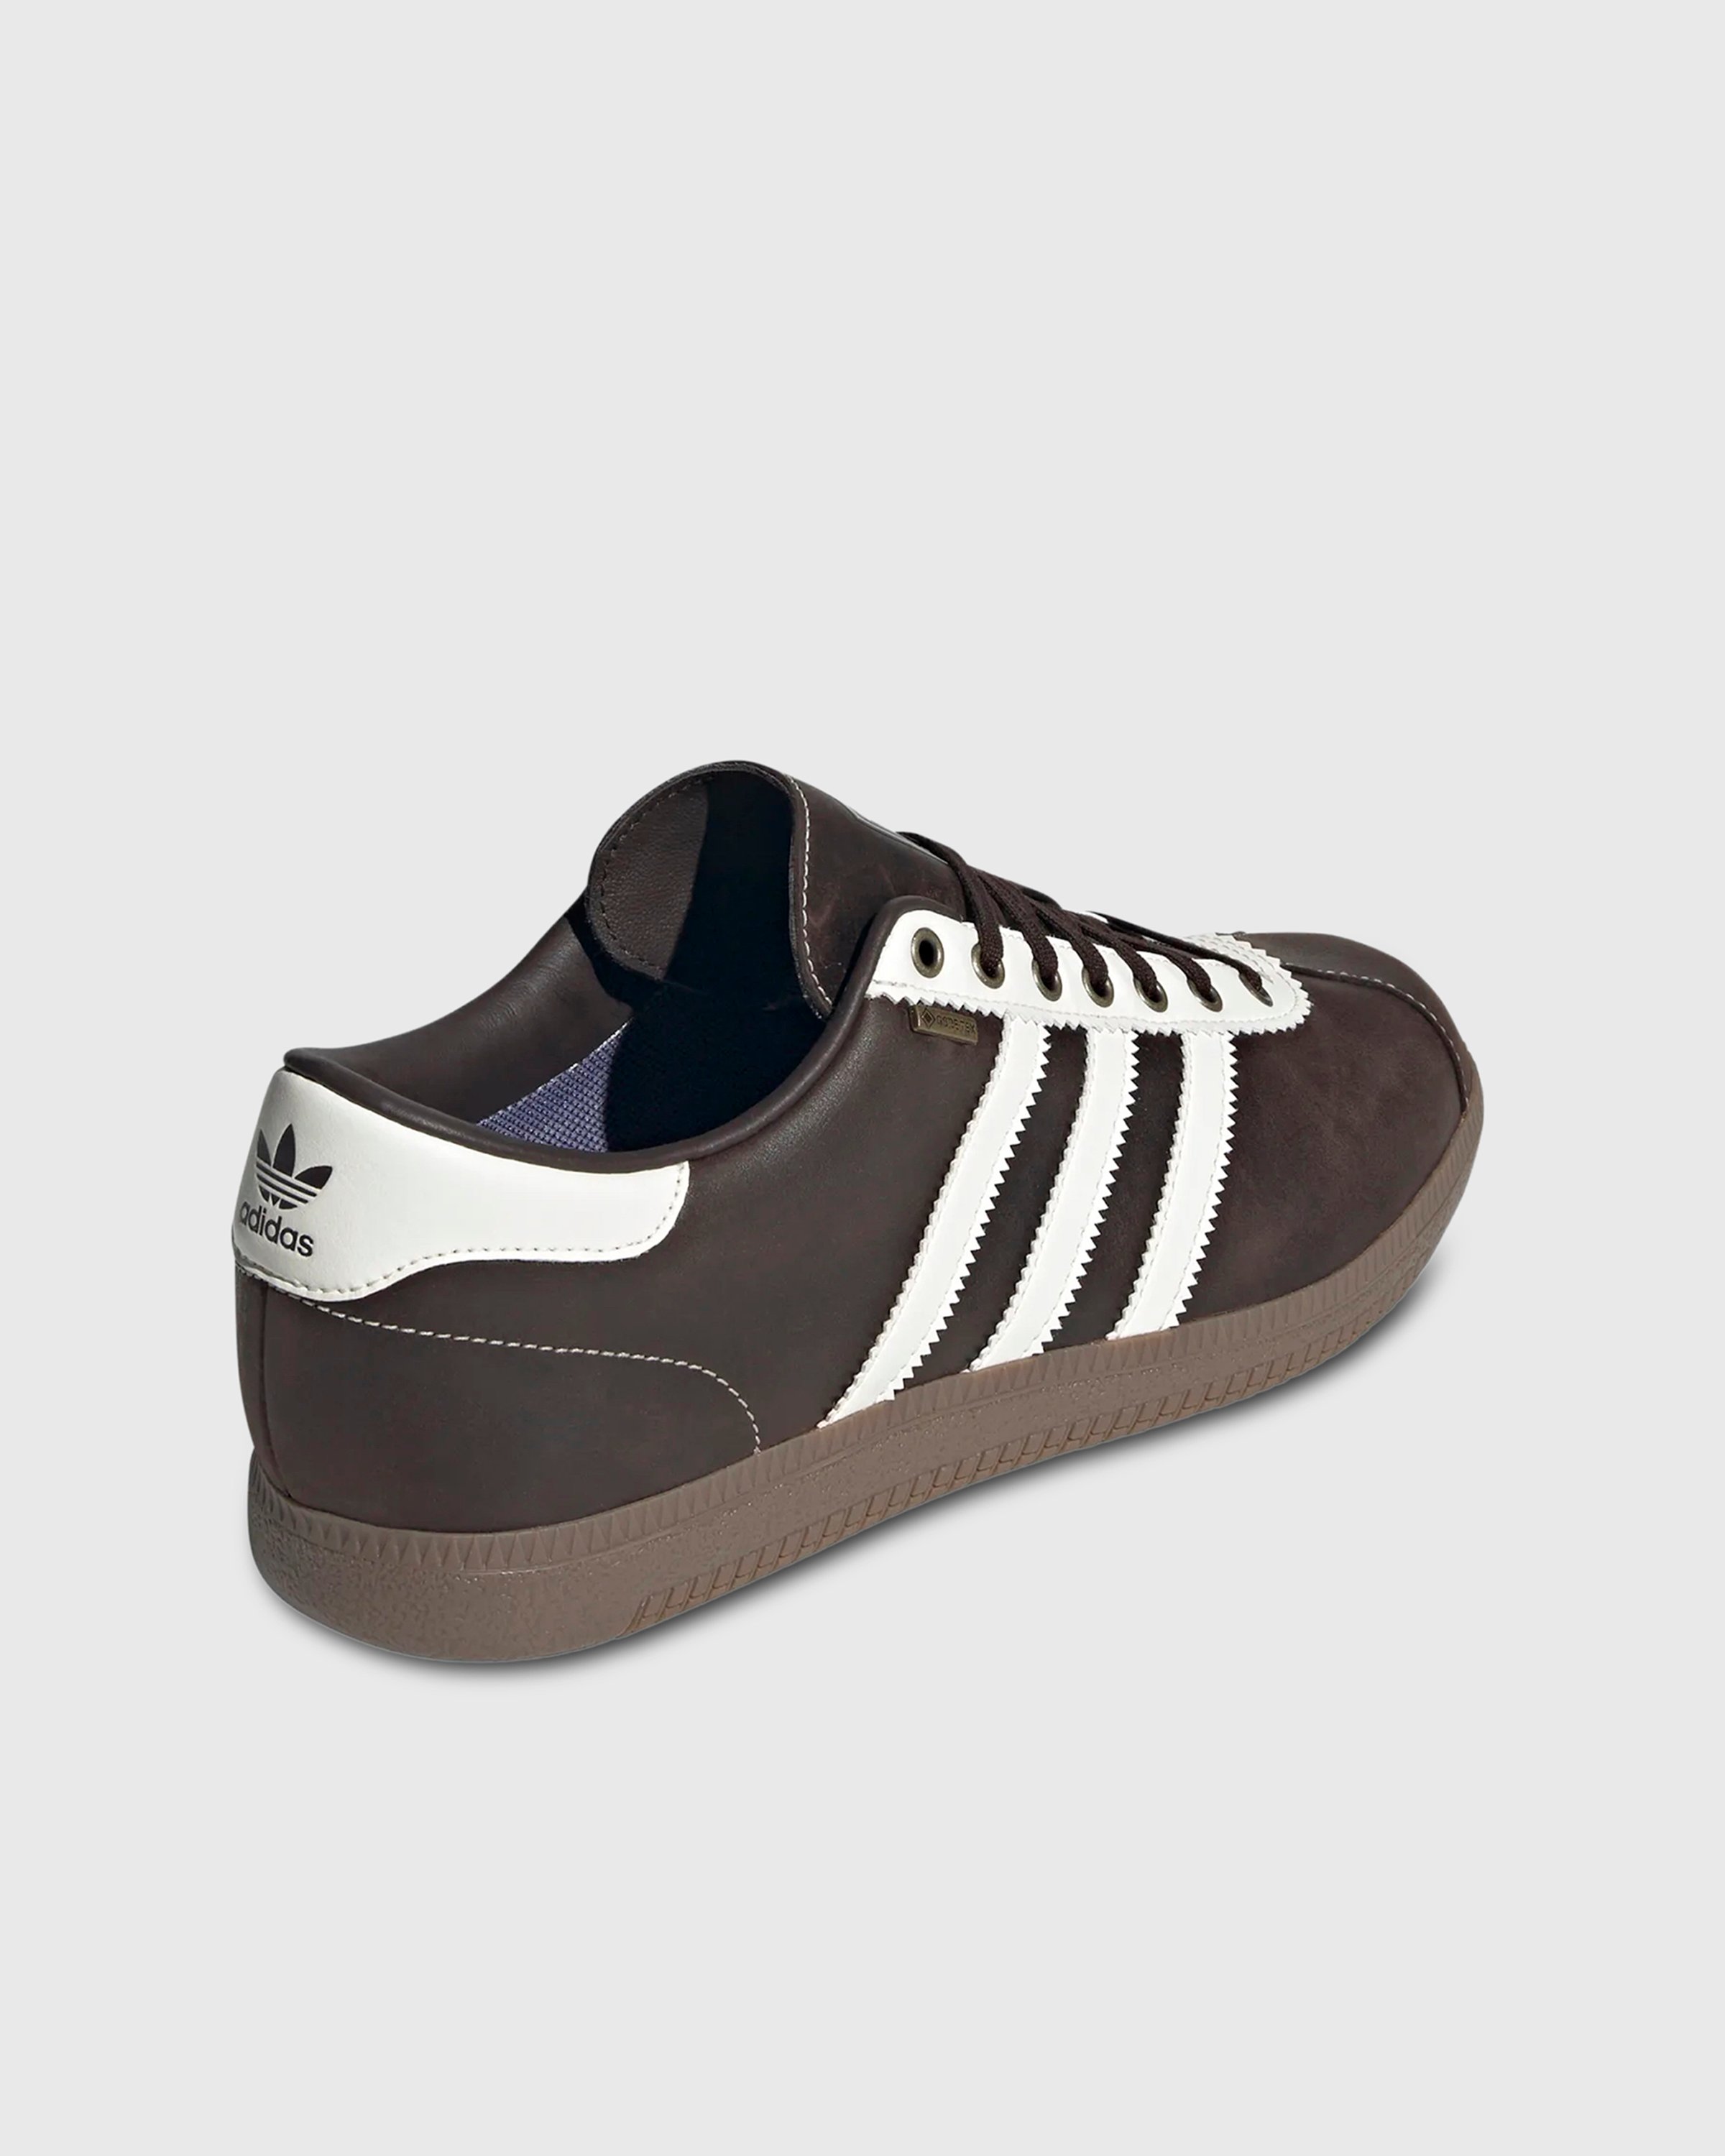 Adidas – Bern GTX Dark Brown | Highsnobiety Shop